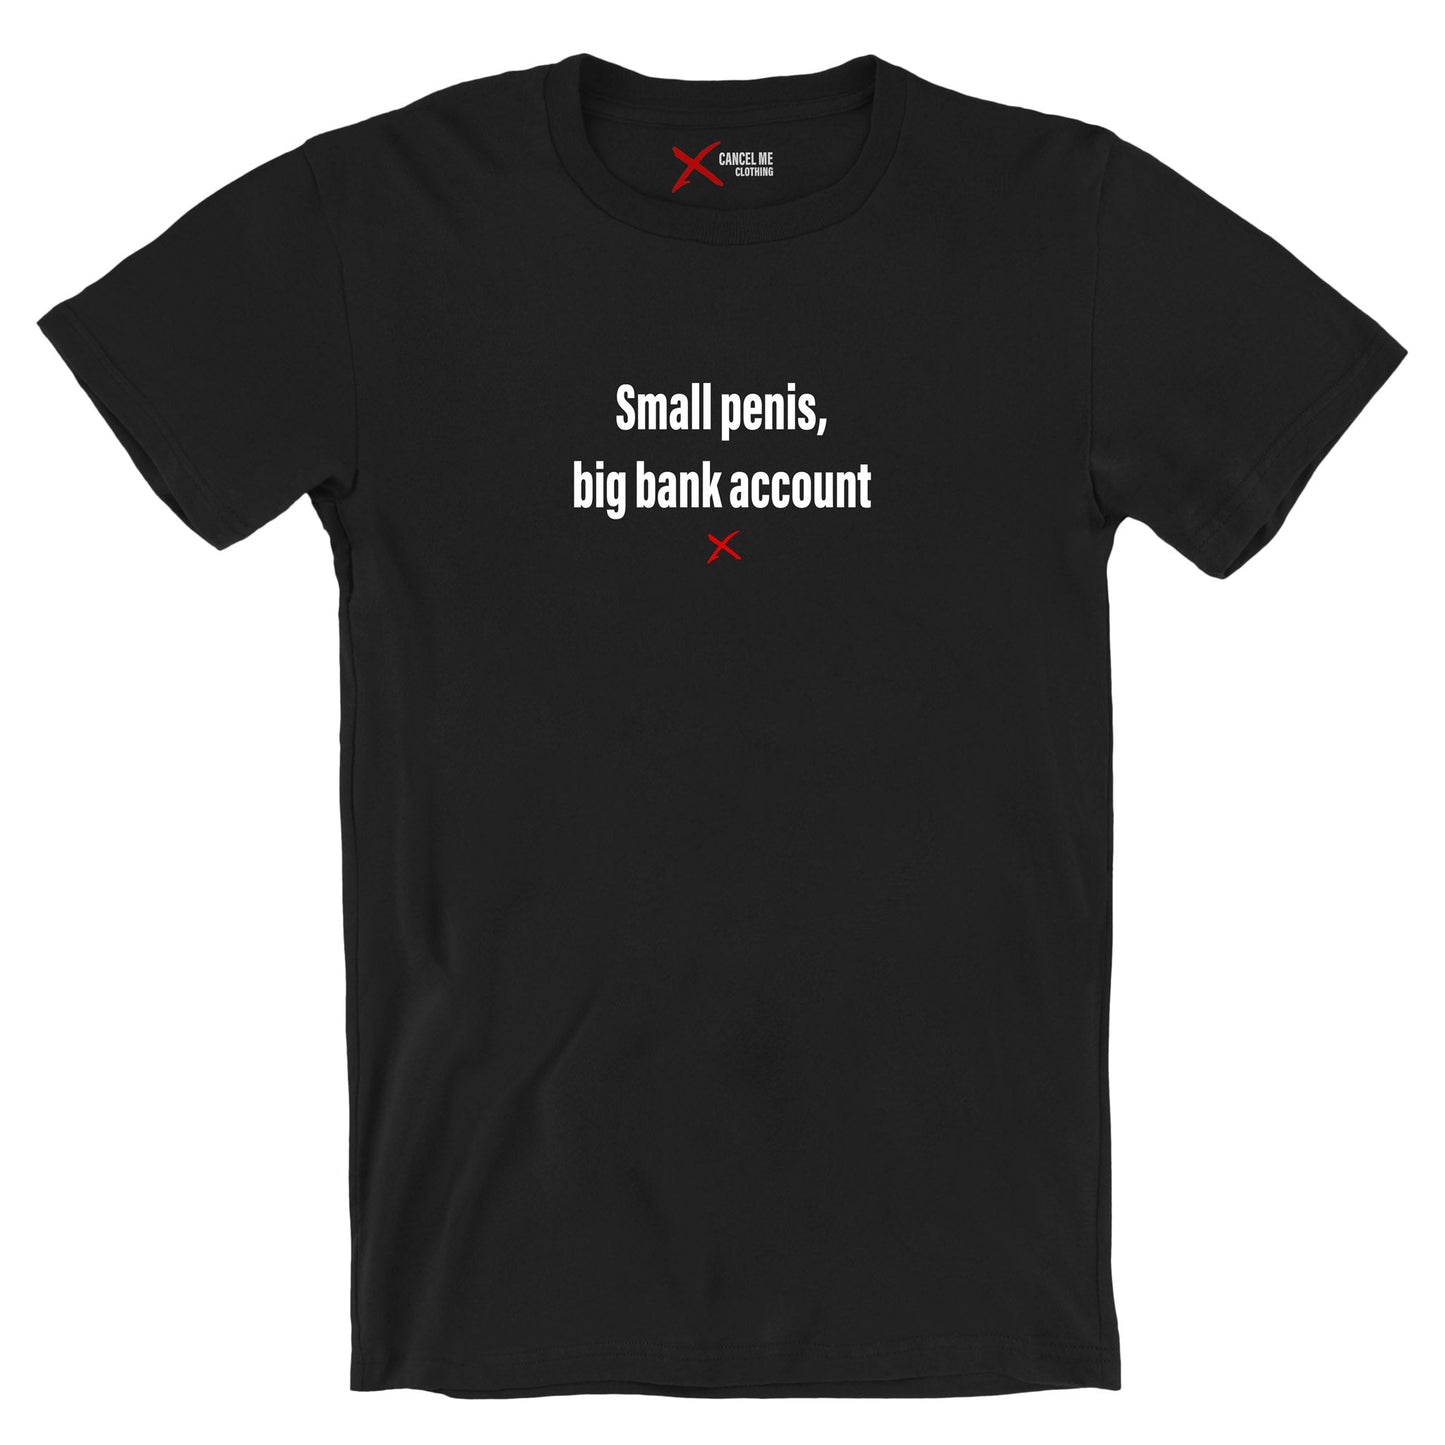 Small penis, big bank account - Shirt